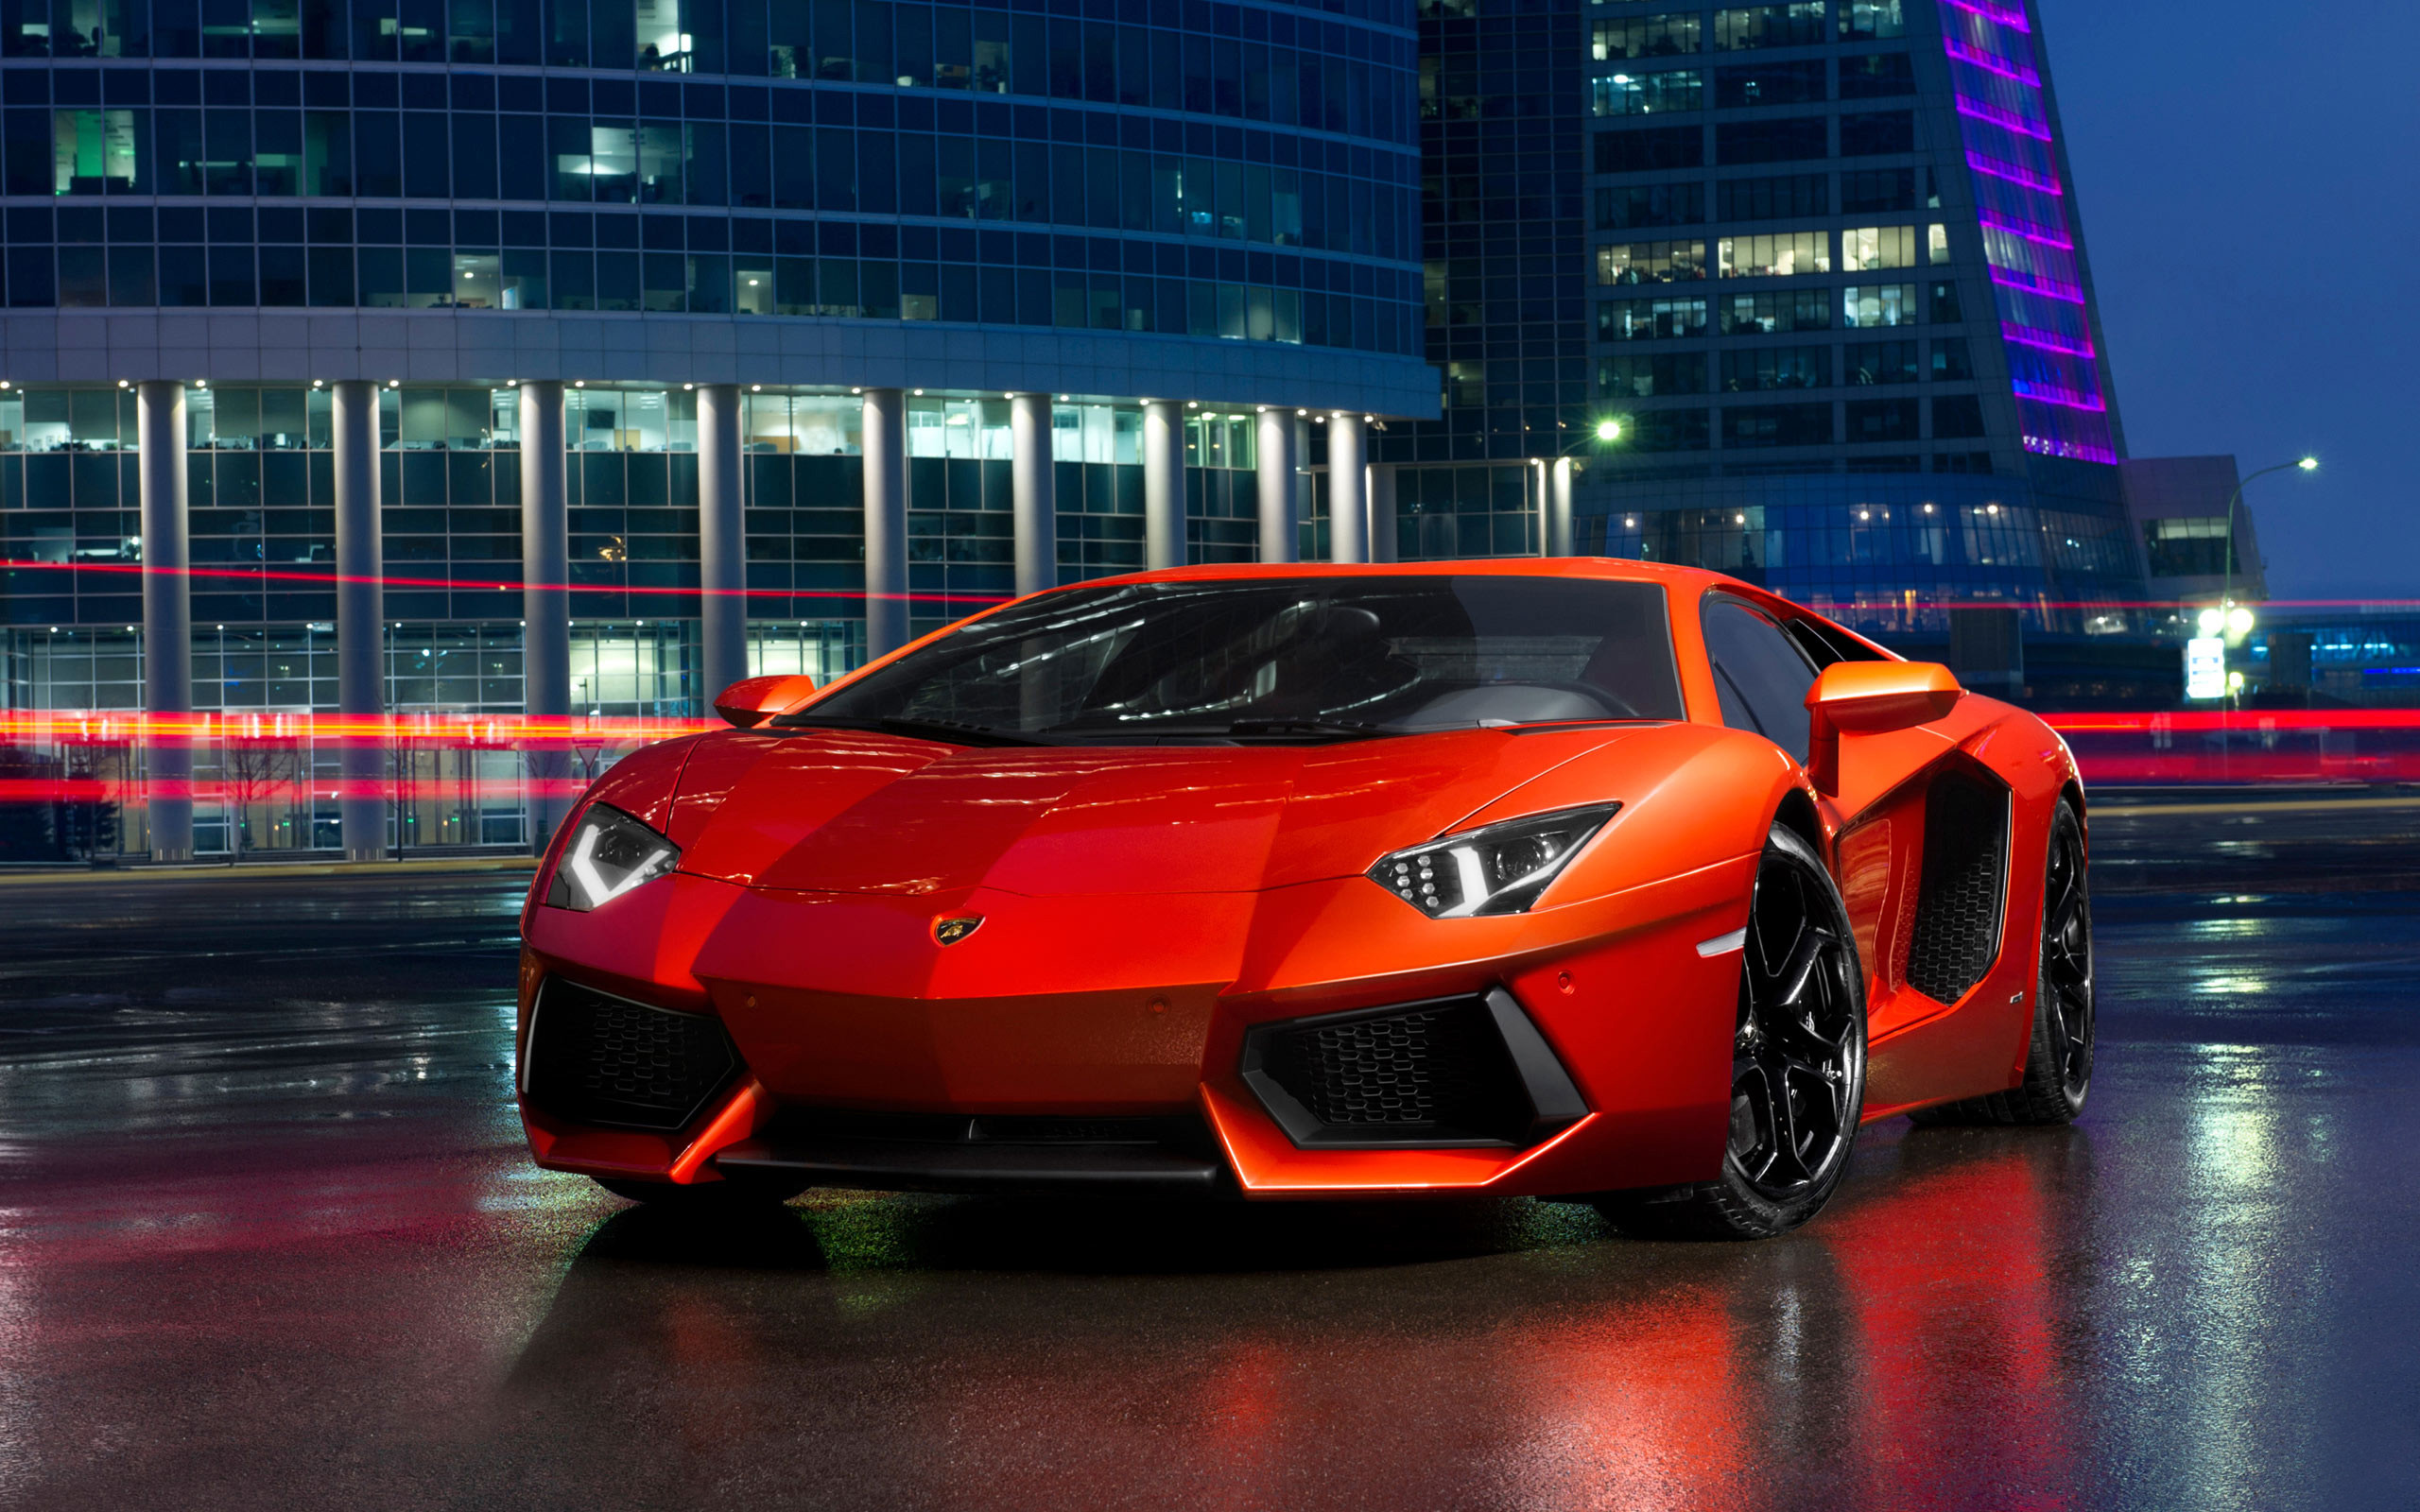 Lamborghini: Tận hưởng một trải nghiệm tràn đầy cảm hứng với những hình ảnh Lamborghini đầy phấn khích. Hãy theo dõi những cảm xúc thăng hoa đến từ một trong những thương hiệu siêu xe nổi tiếng nhất trên thế giới.